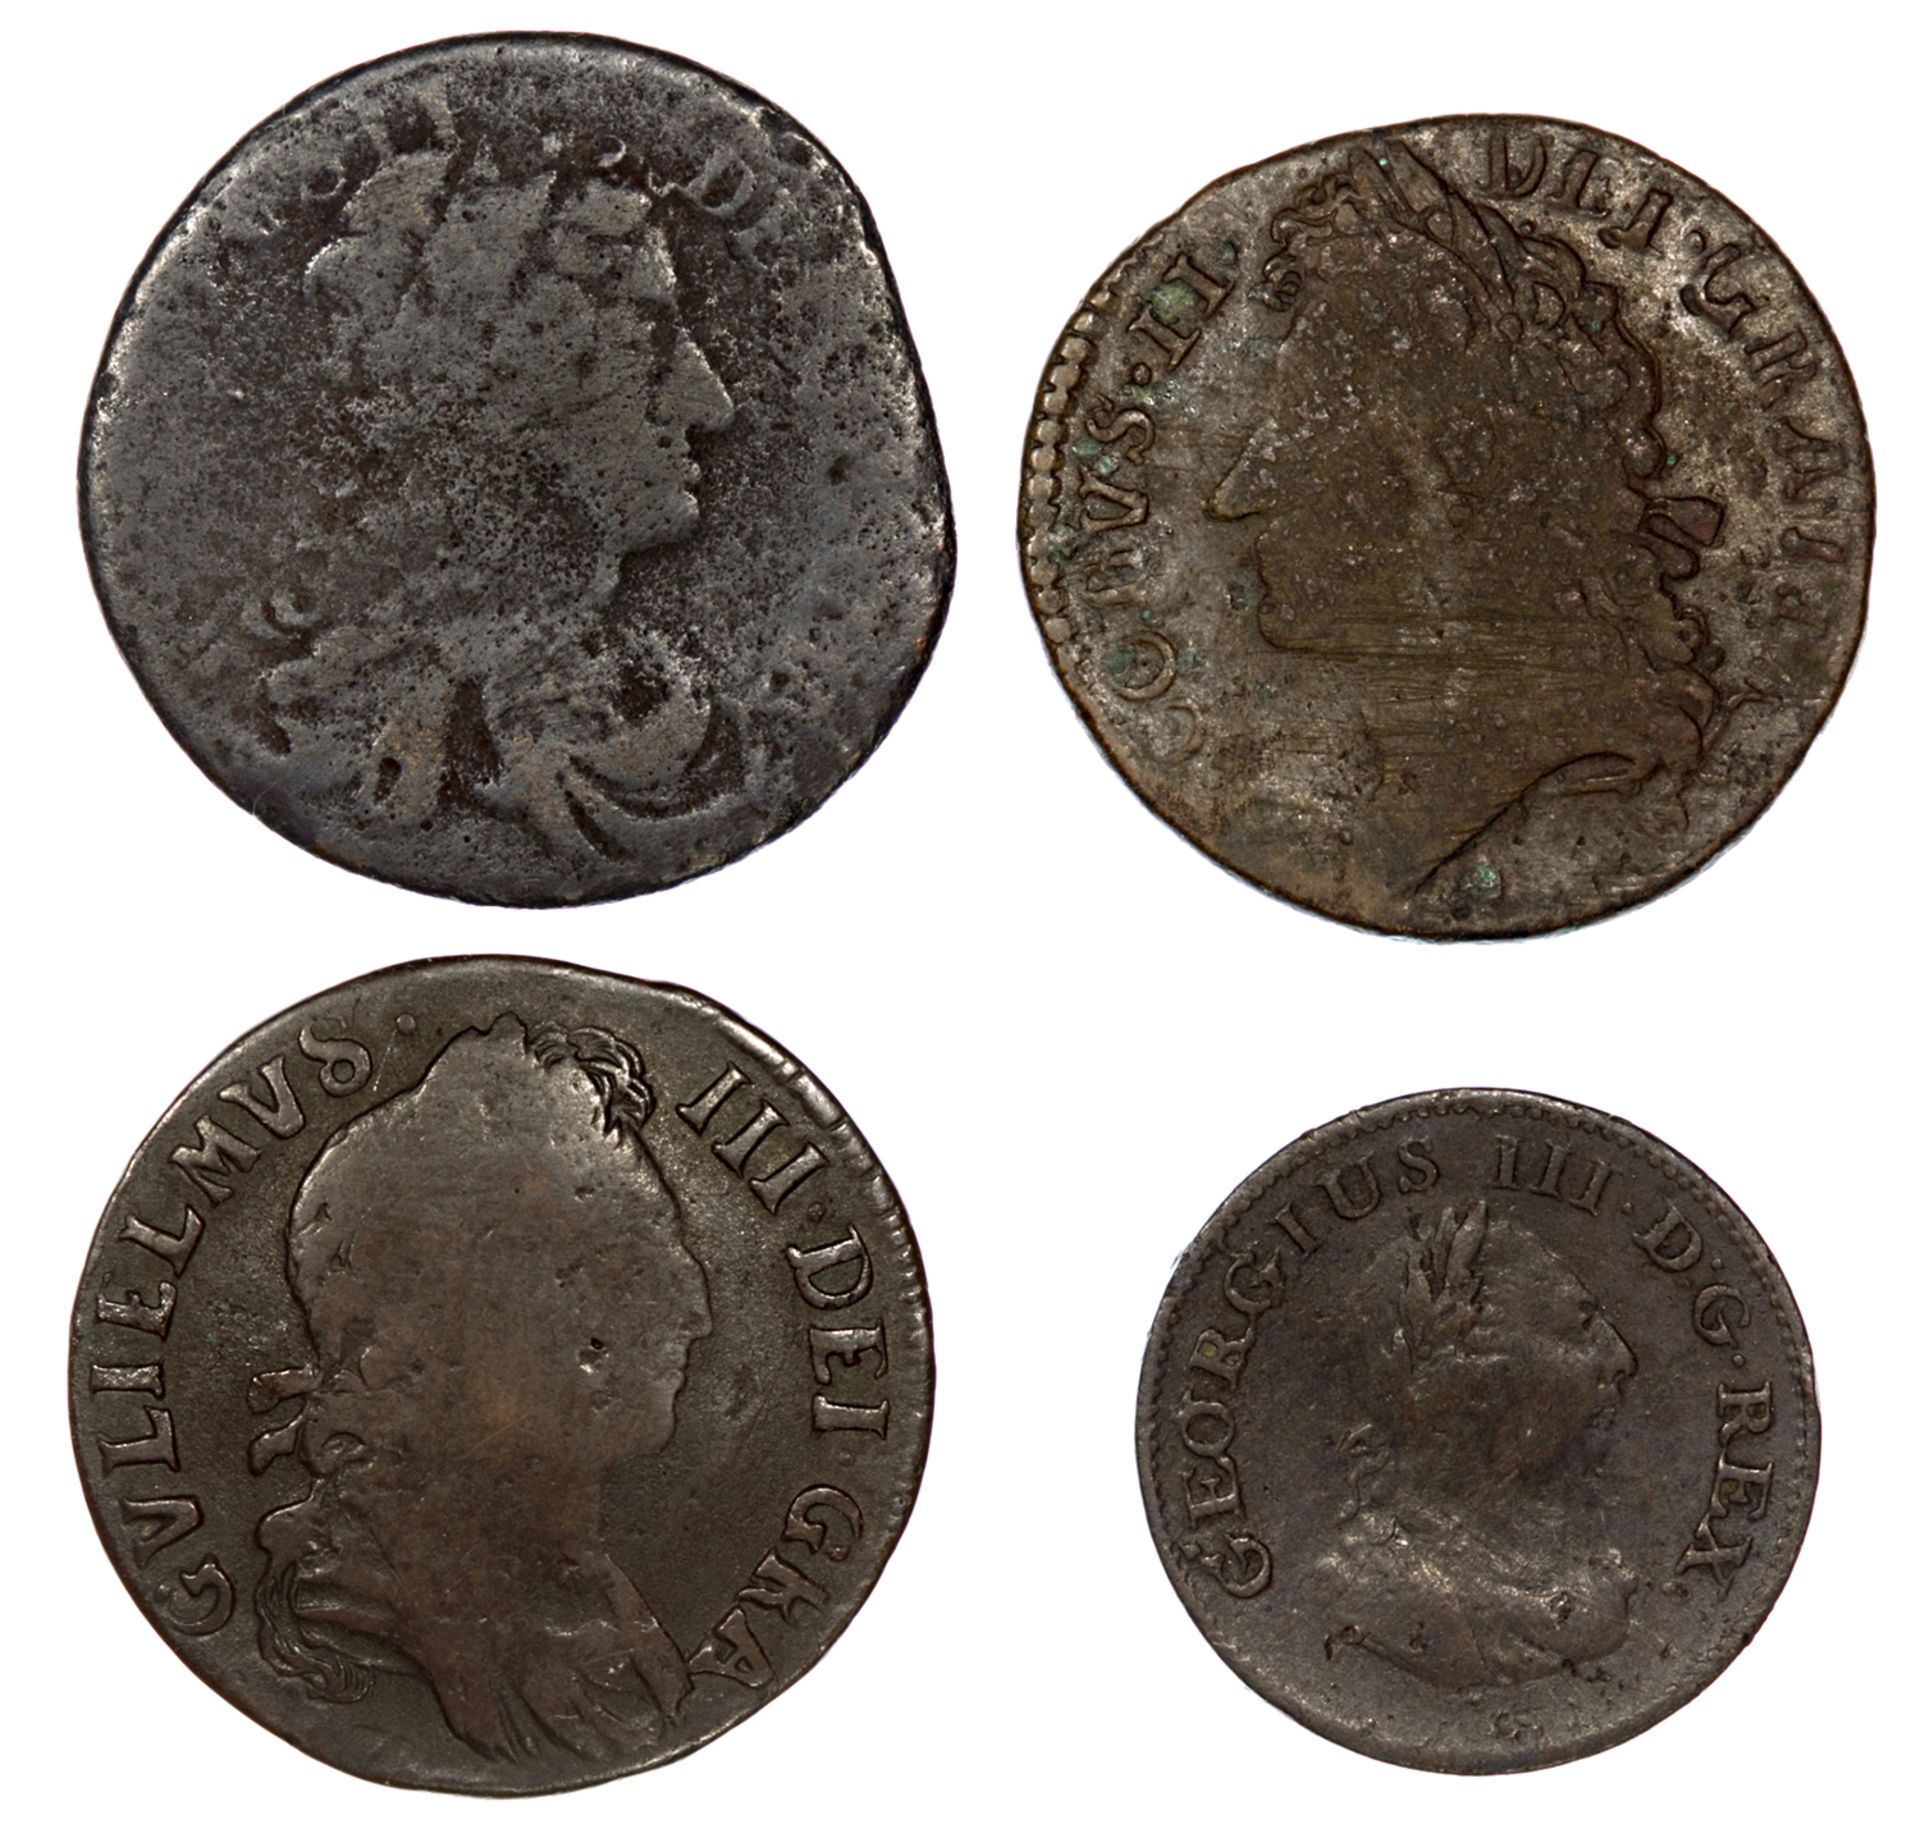 Ireland - James II Gun Money Shilling Nov 1689; Halfpenny Charles II 1680 & William III 1696; - Image 2 of 3